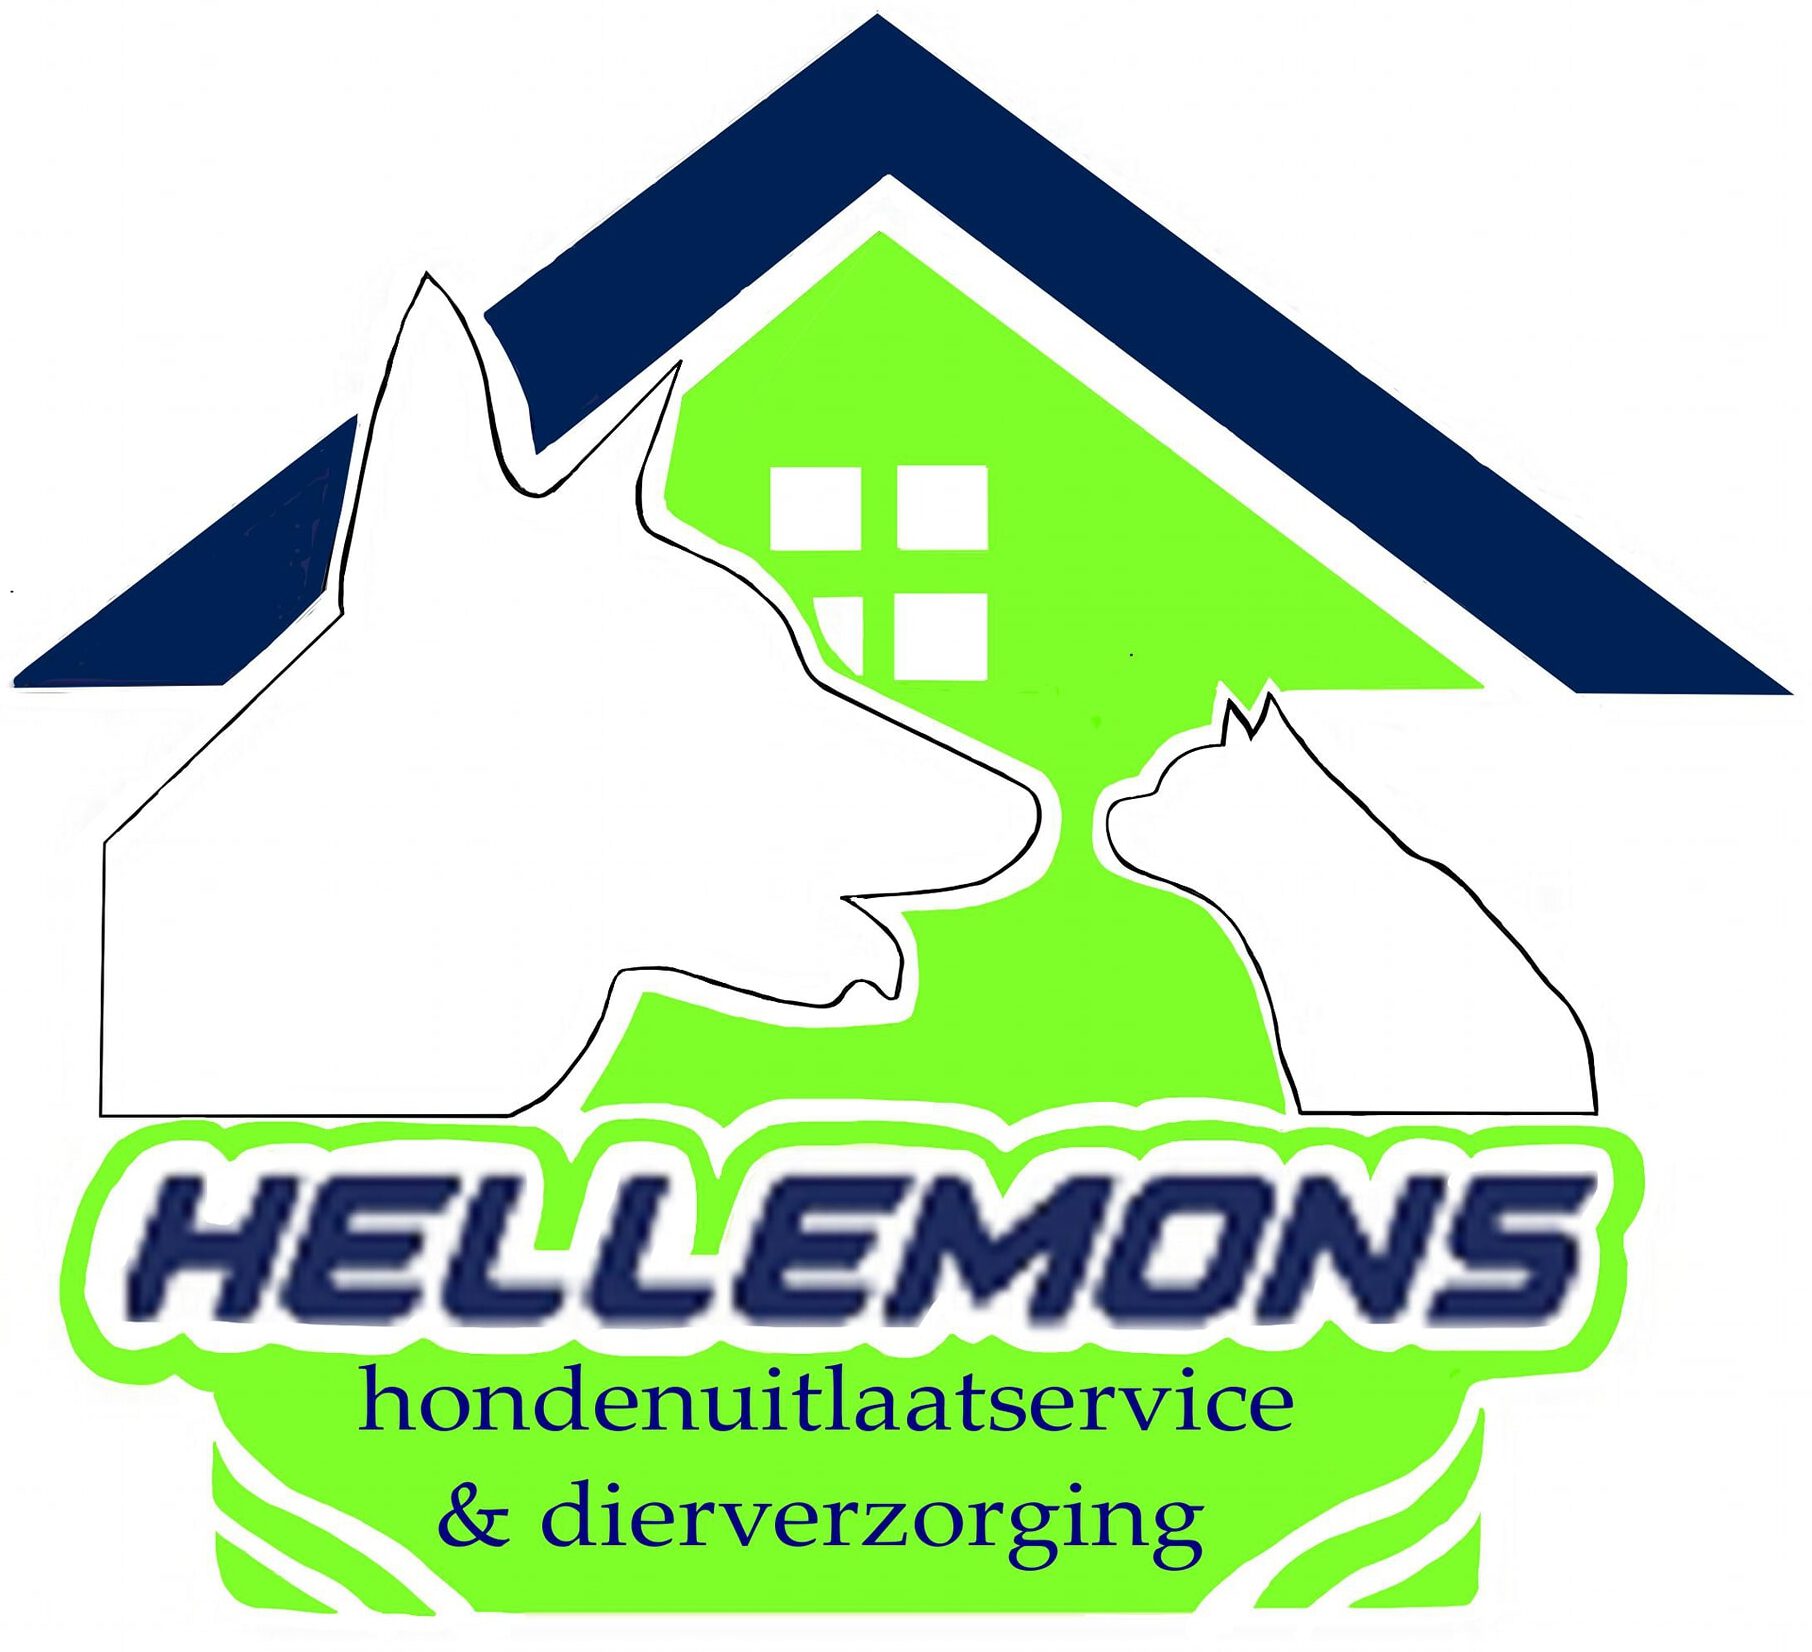 Hellemons hondenuitlaatservice en dierverzorging